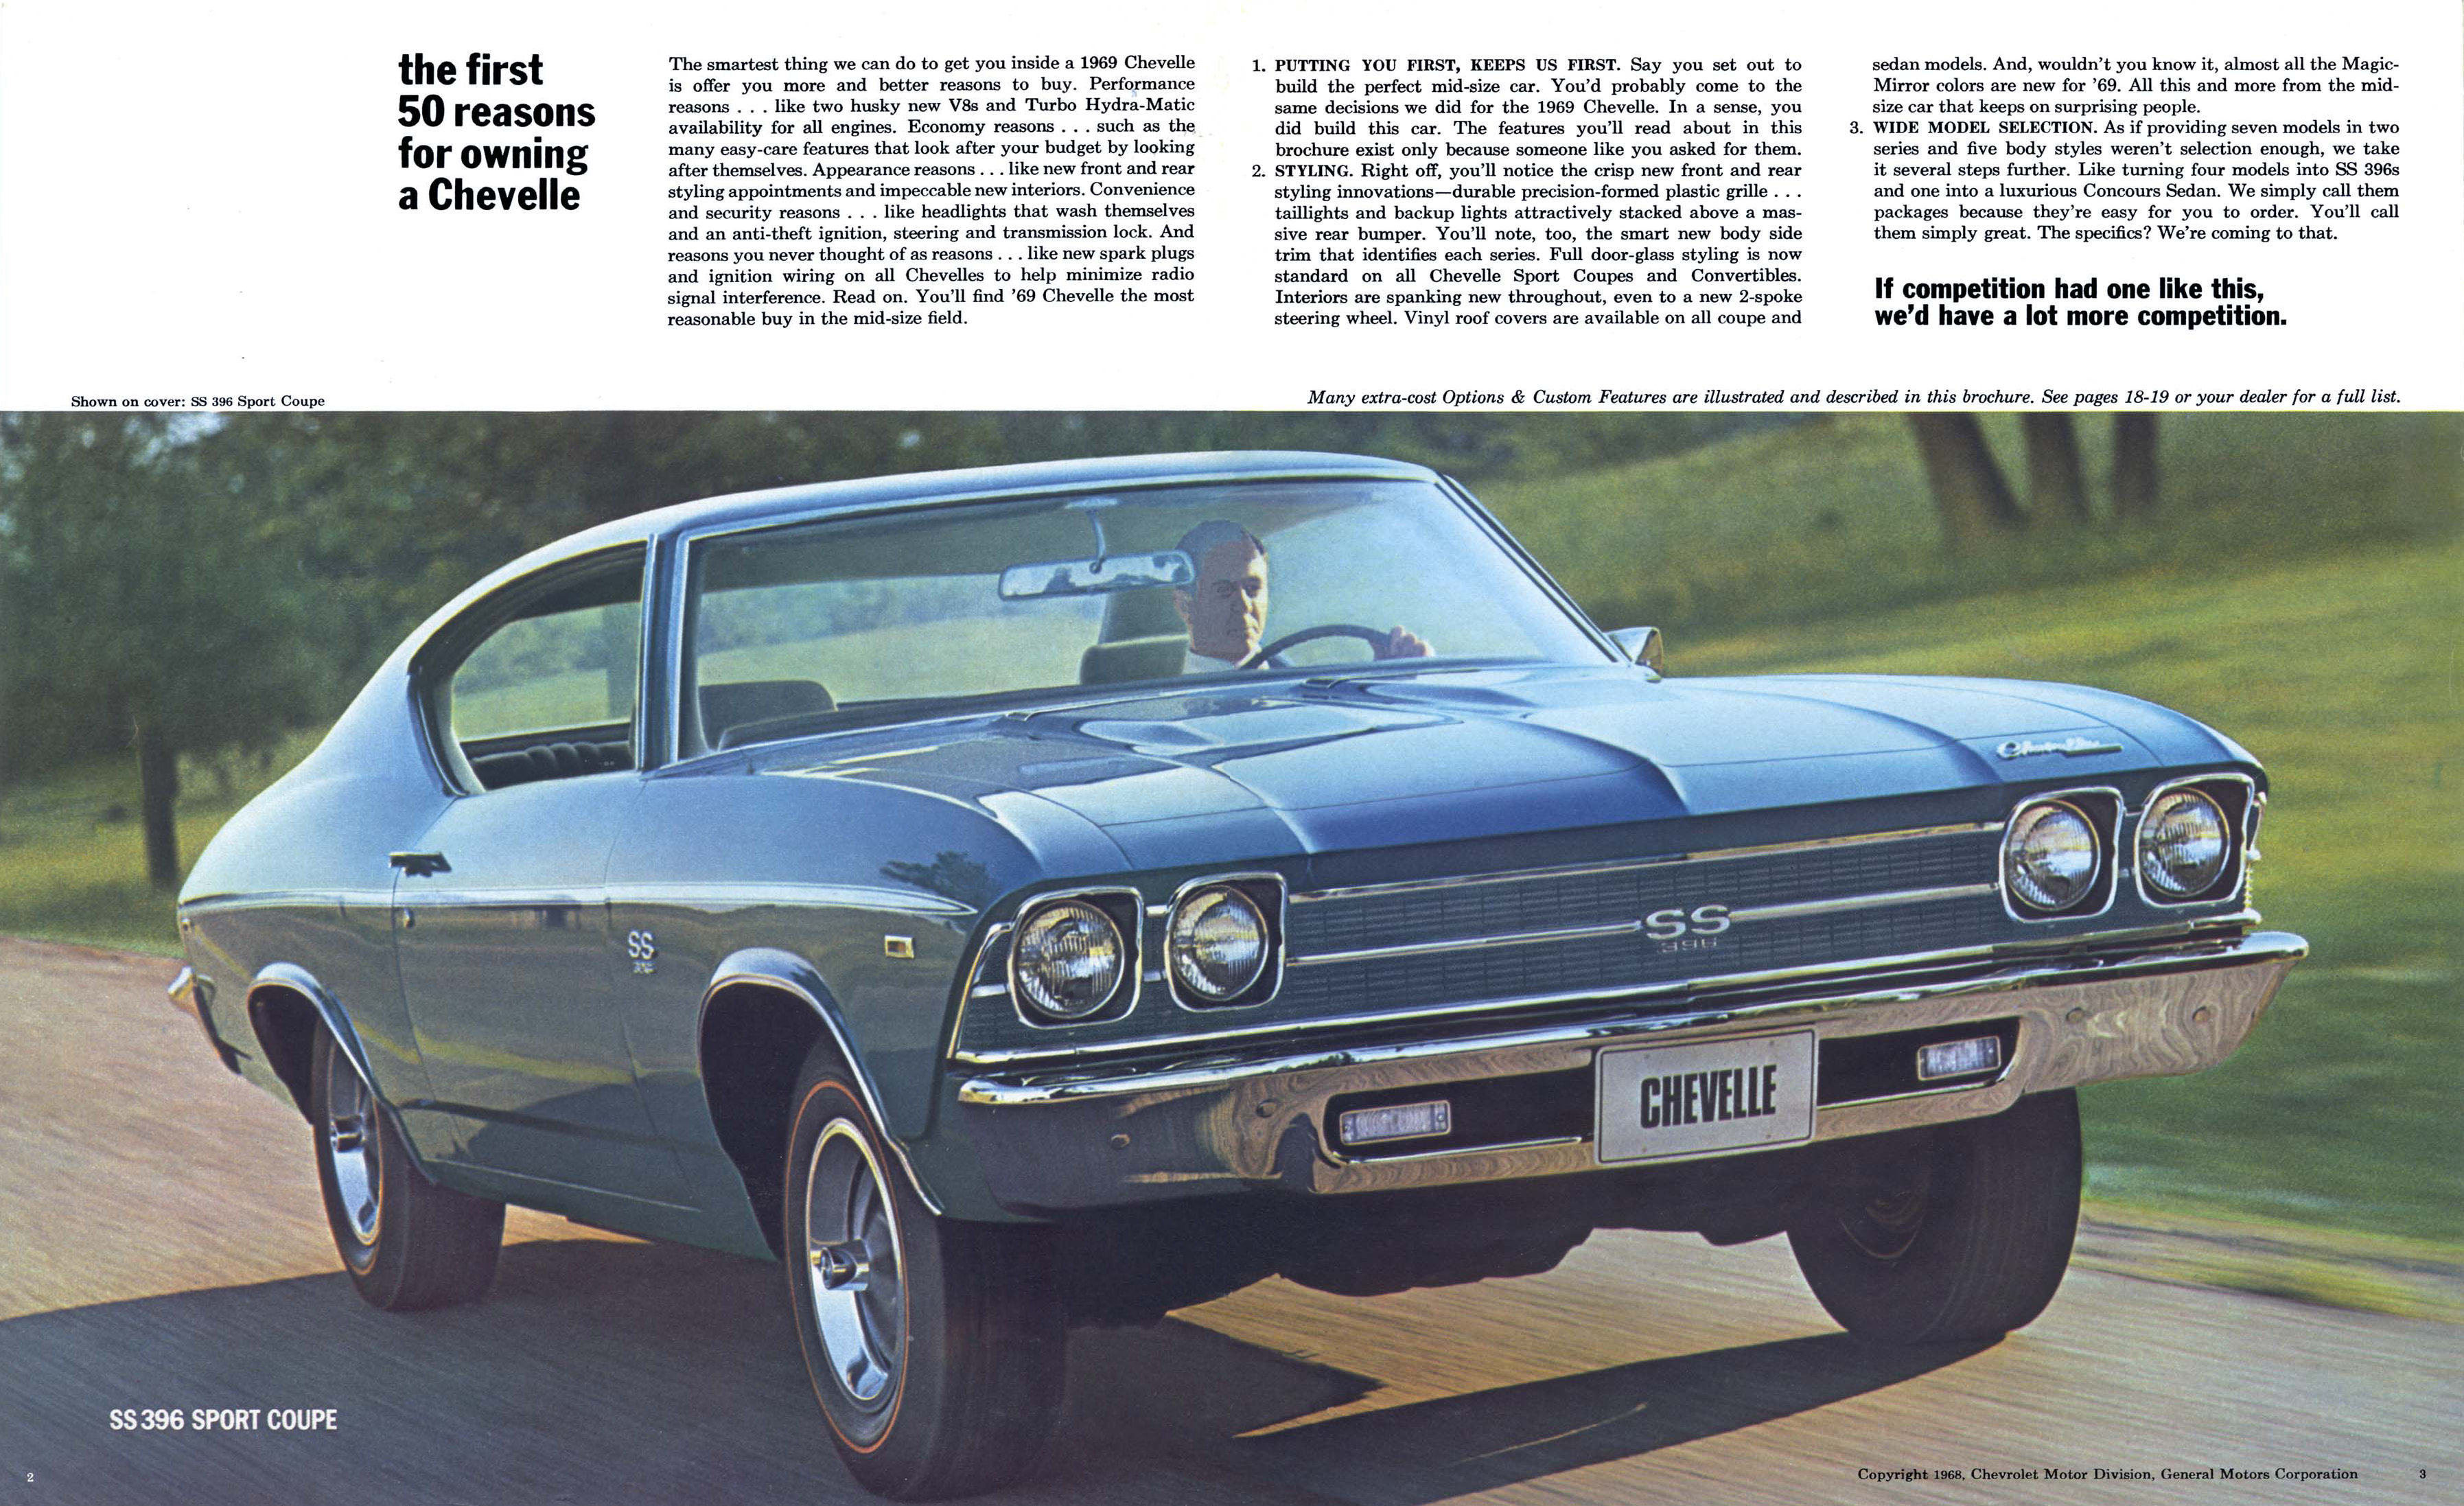 1969 Chevrolet Chevelle Brochure.